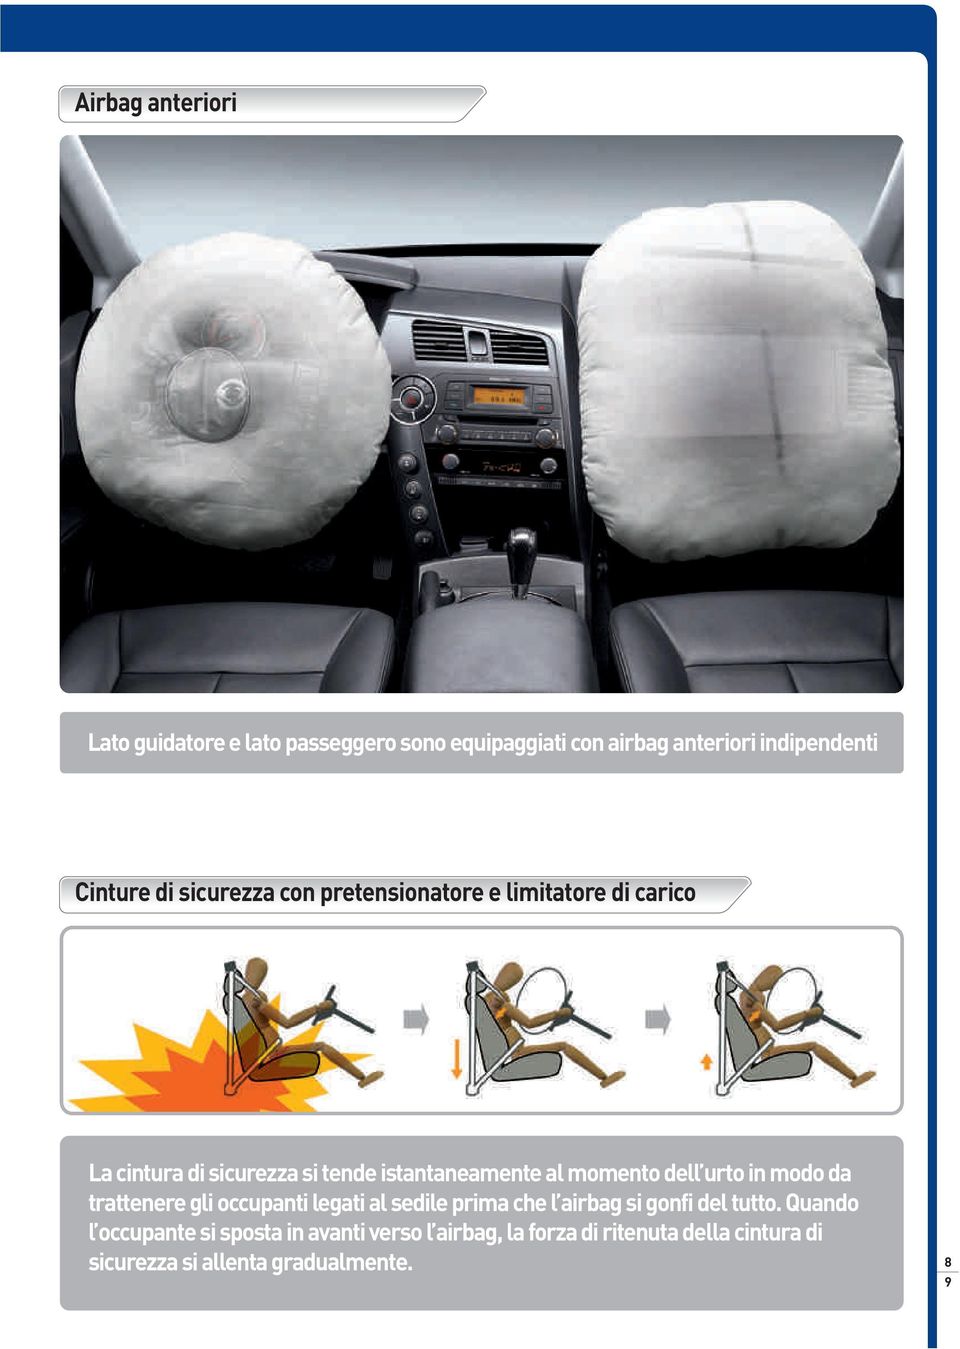 dell urto in modo da trattenere gli occupanti legati al sedile prima che l airbag si gonfi del tutto.